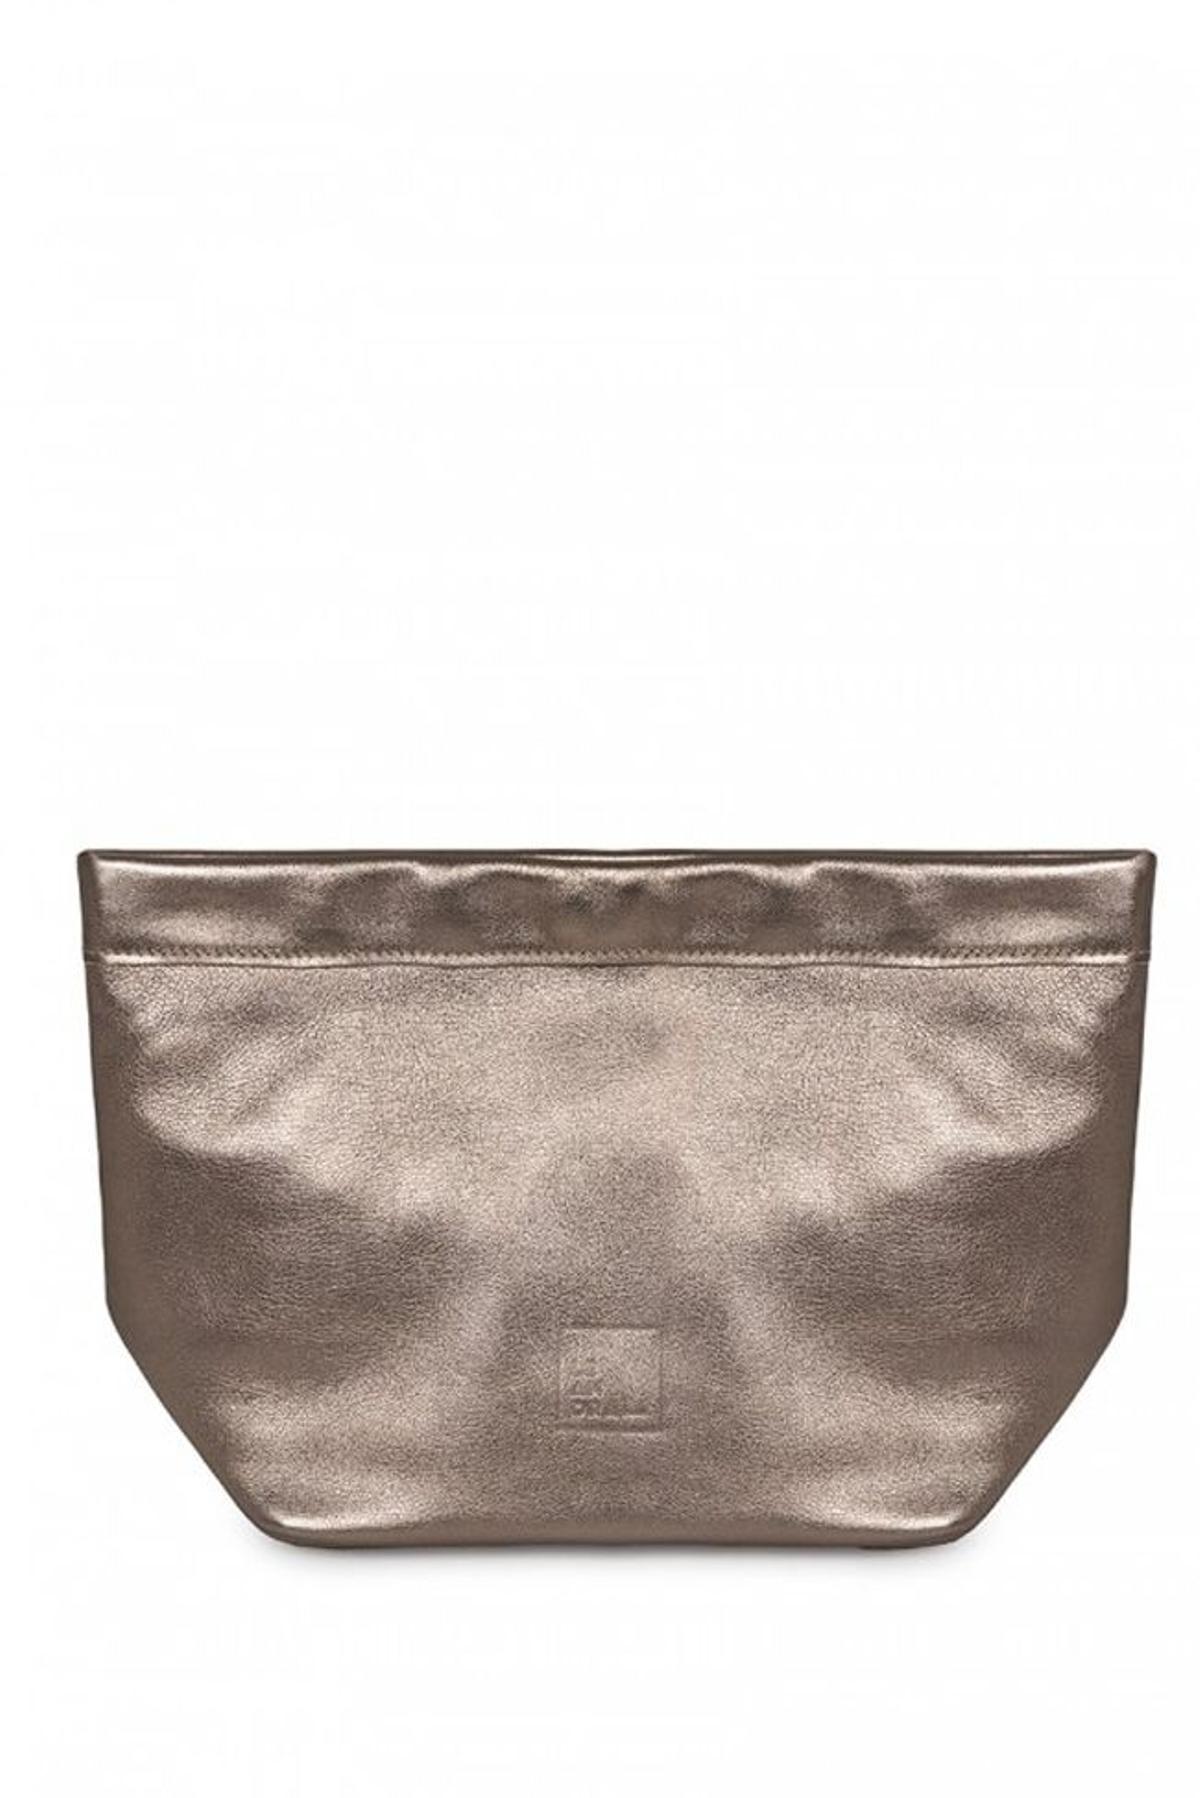 Bolso clutch efecto 'paper bag', de Leandra Brand